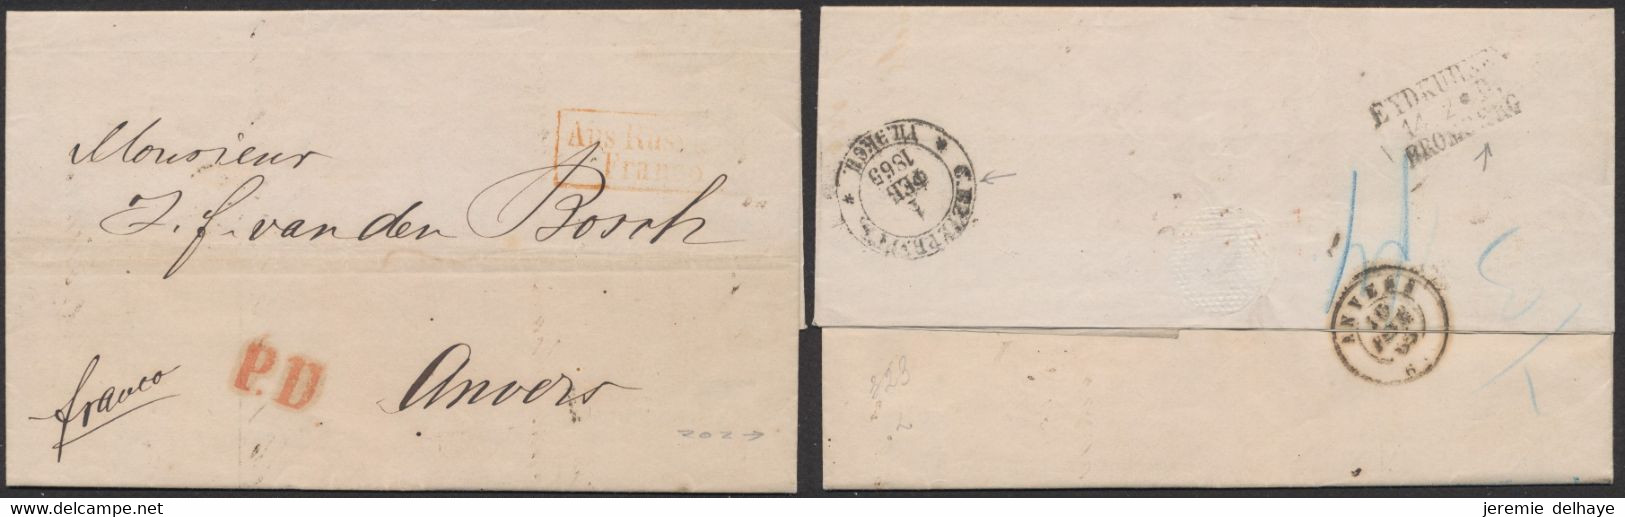 LAC Non Affranchie Datée De St-Petersbourg 31/12/1865 + Encadré Rouge "Aus Russland / Franco" > Anvers (Belgique) - Briefe U. Dokumente